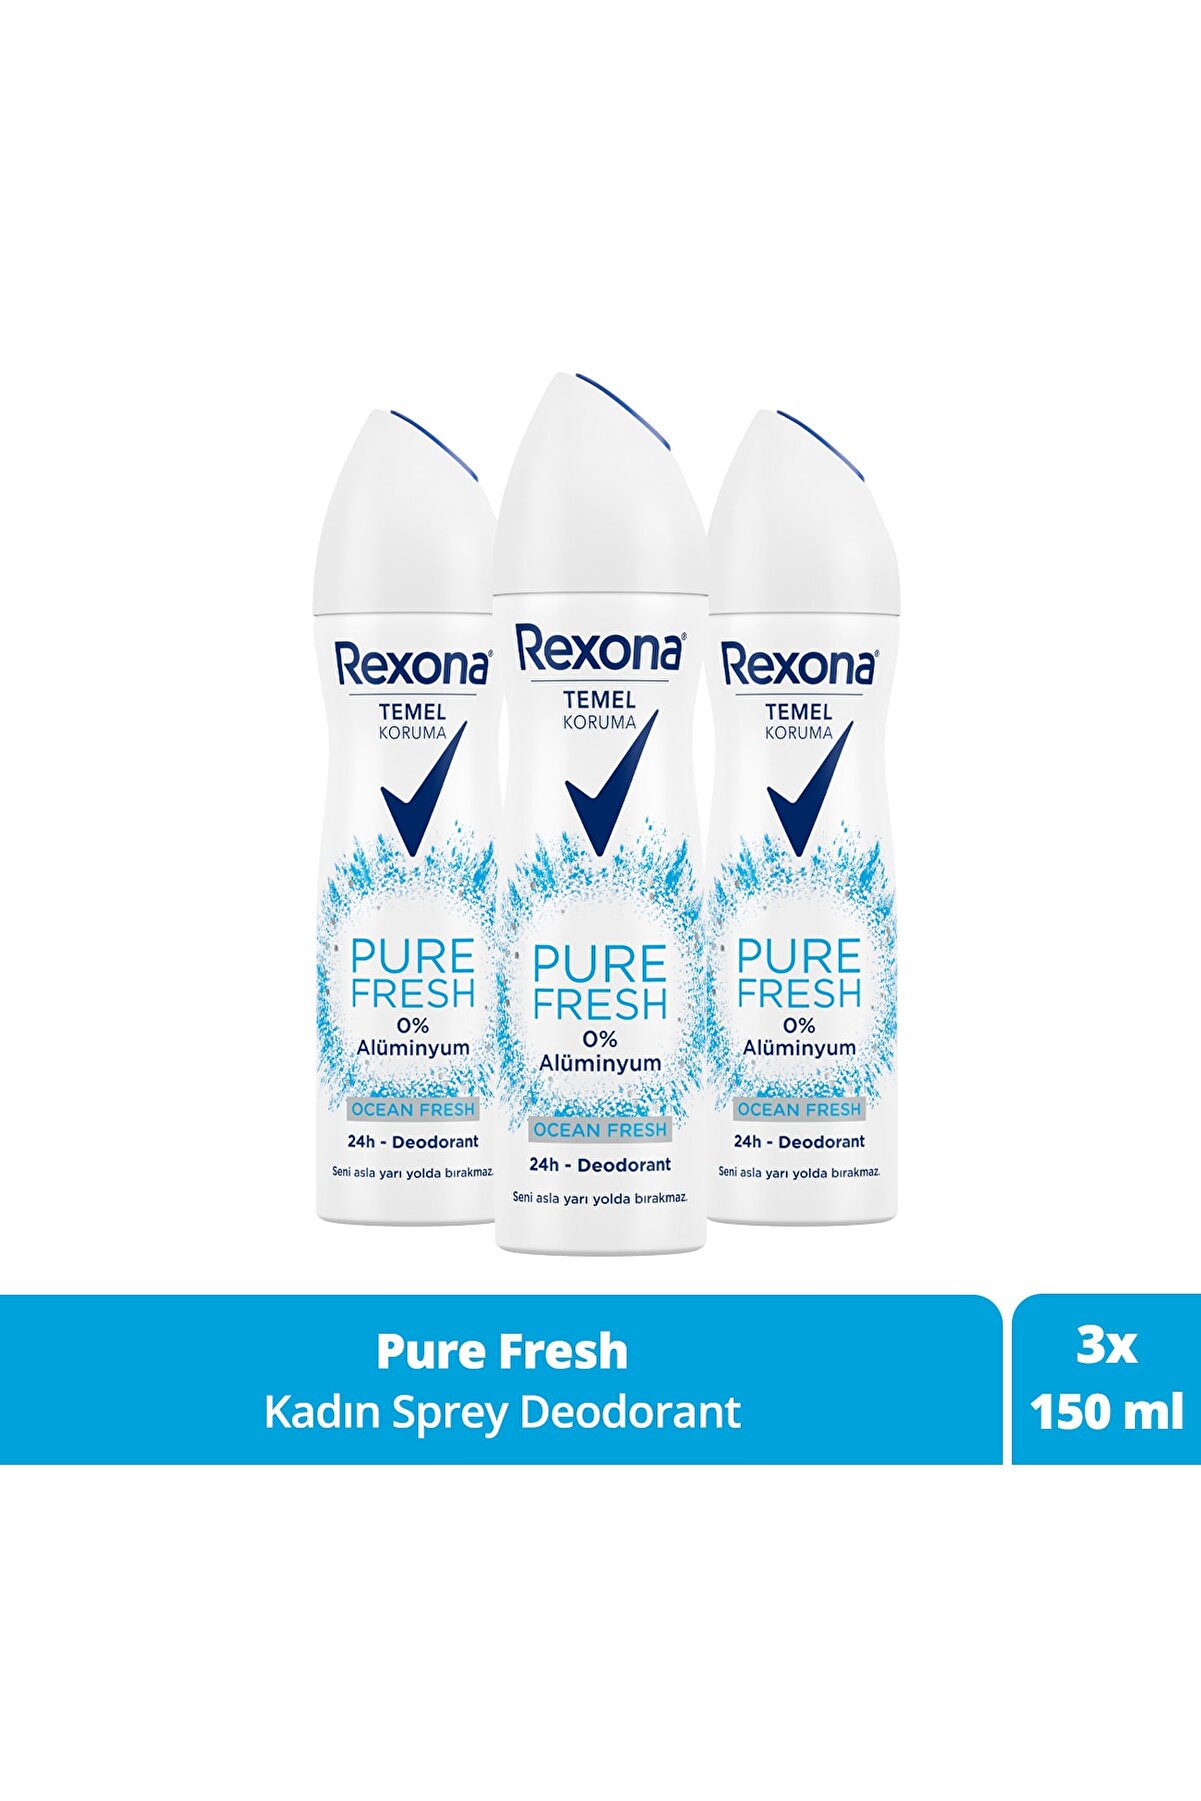 Rexona Temel Koruma Kadın Deodorant Sprey Pure Fresh Ocean Fresh 150 ml x3 Adet